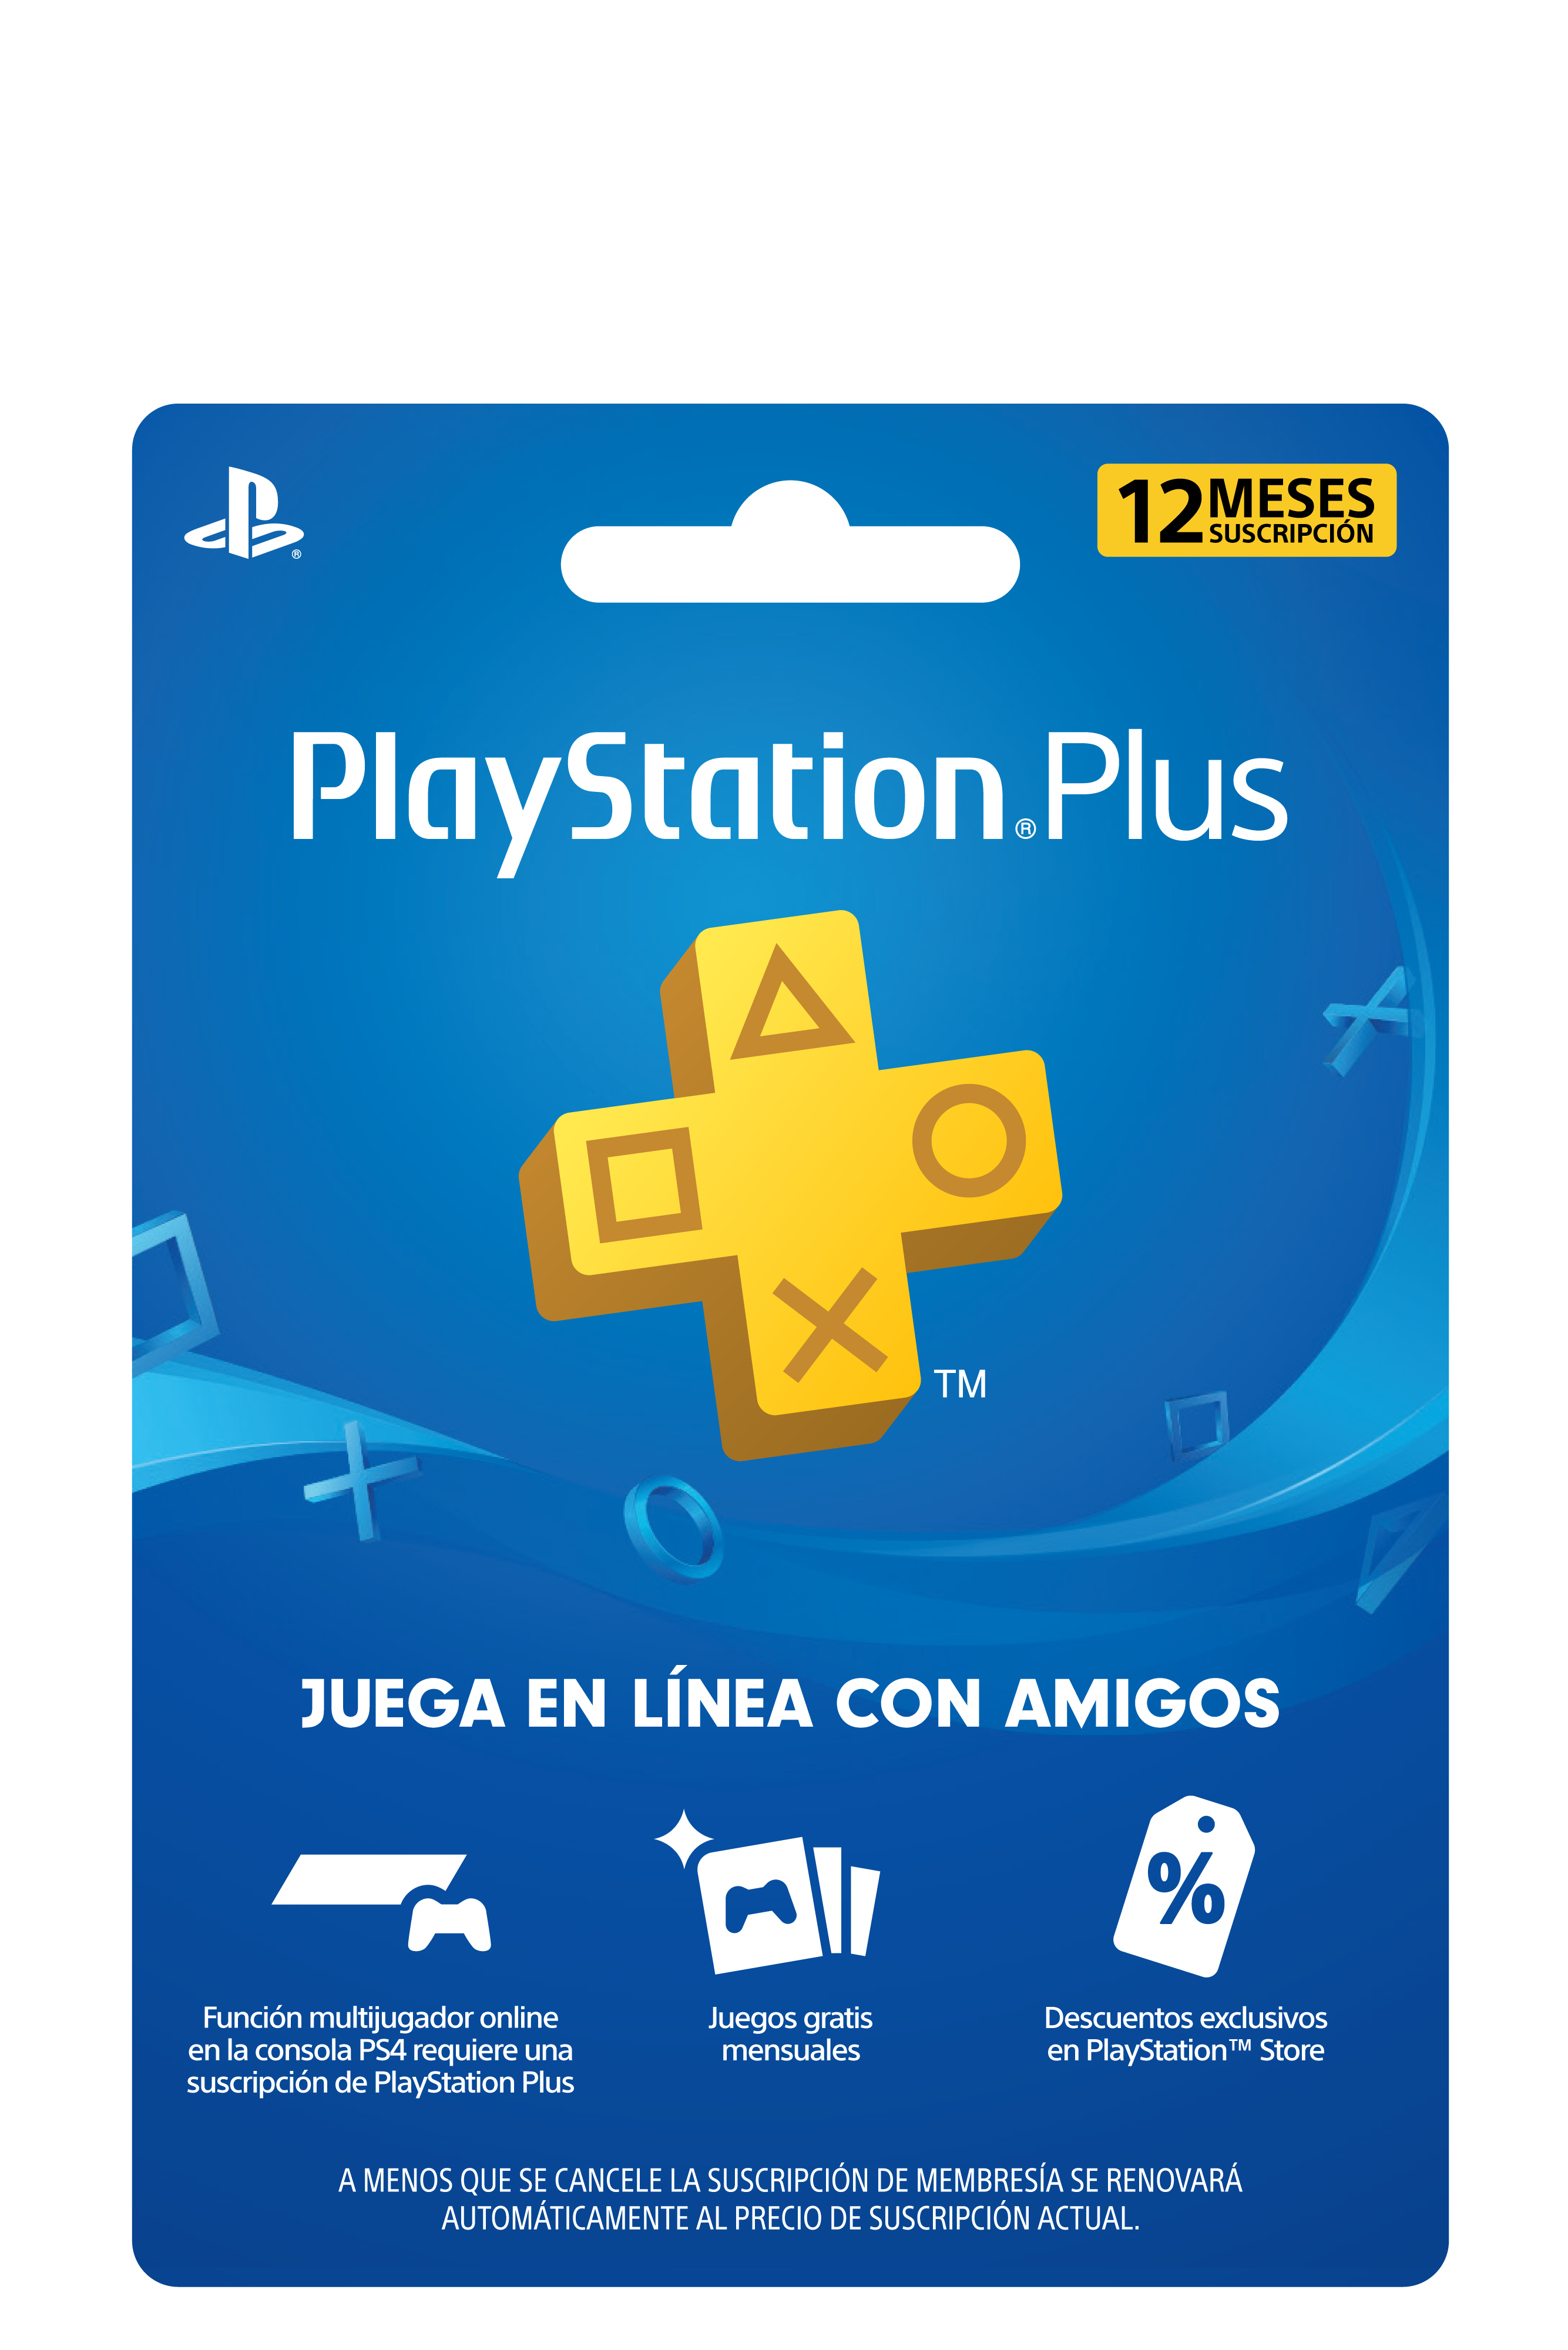 Las tarjetas PlayStation llegaron a las tiendas argentinas - PressOver